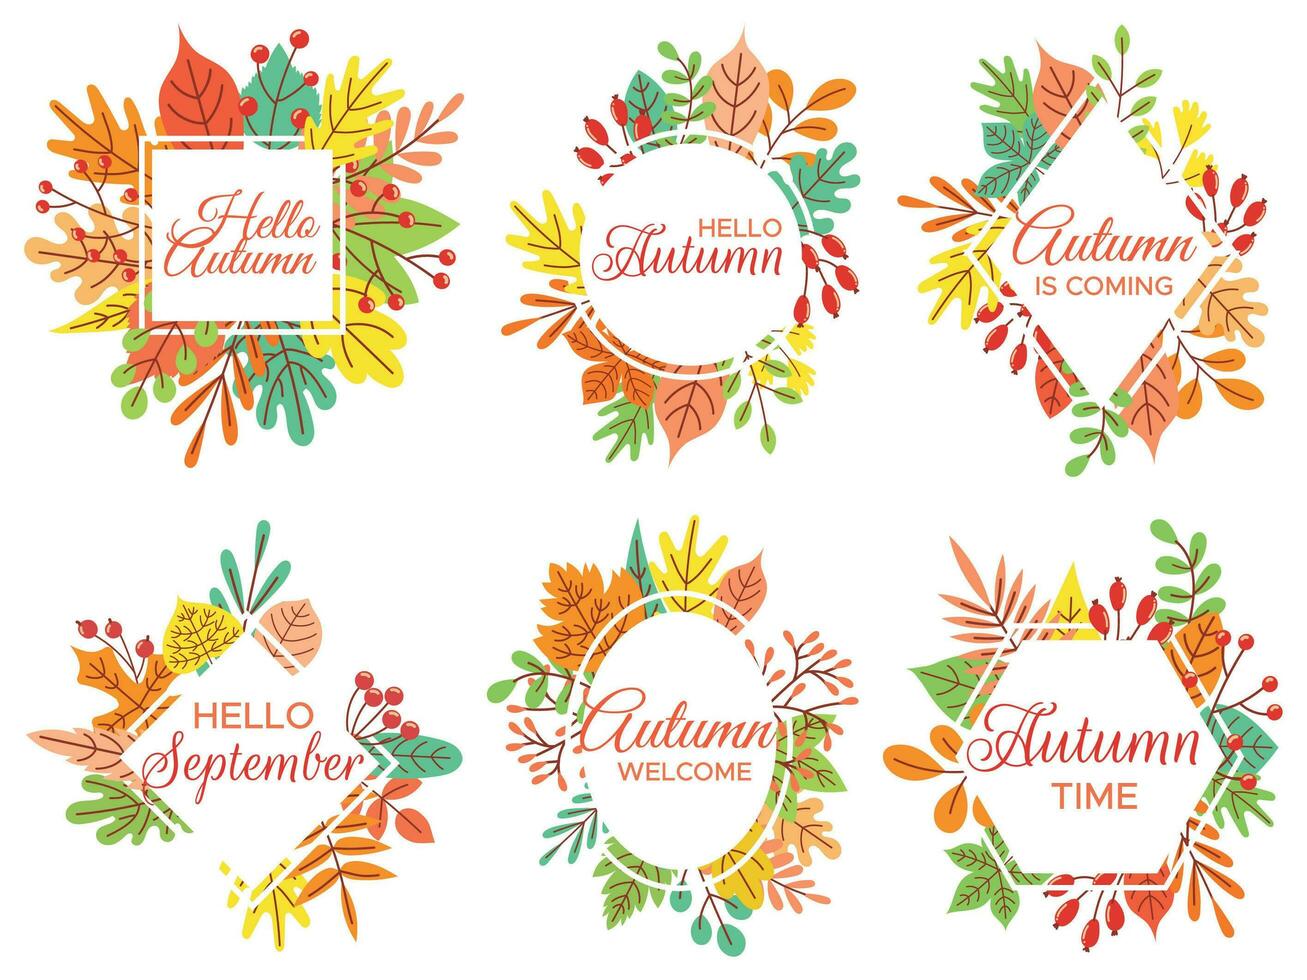 Hallo Herbst. herzlich willkommen September, herbstlich gefallen Blätter Rahmen und Gelb Blatt Beschriftung Vektor Illustration einstellen